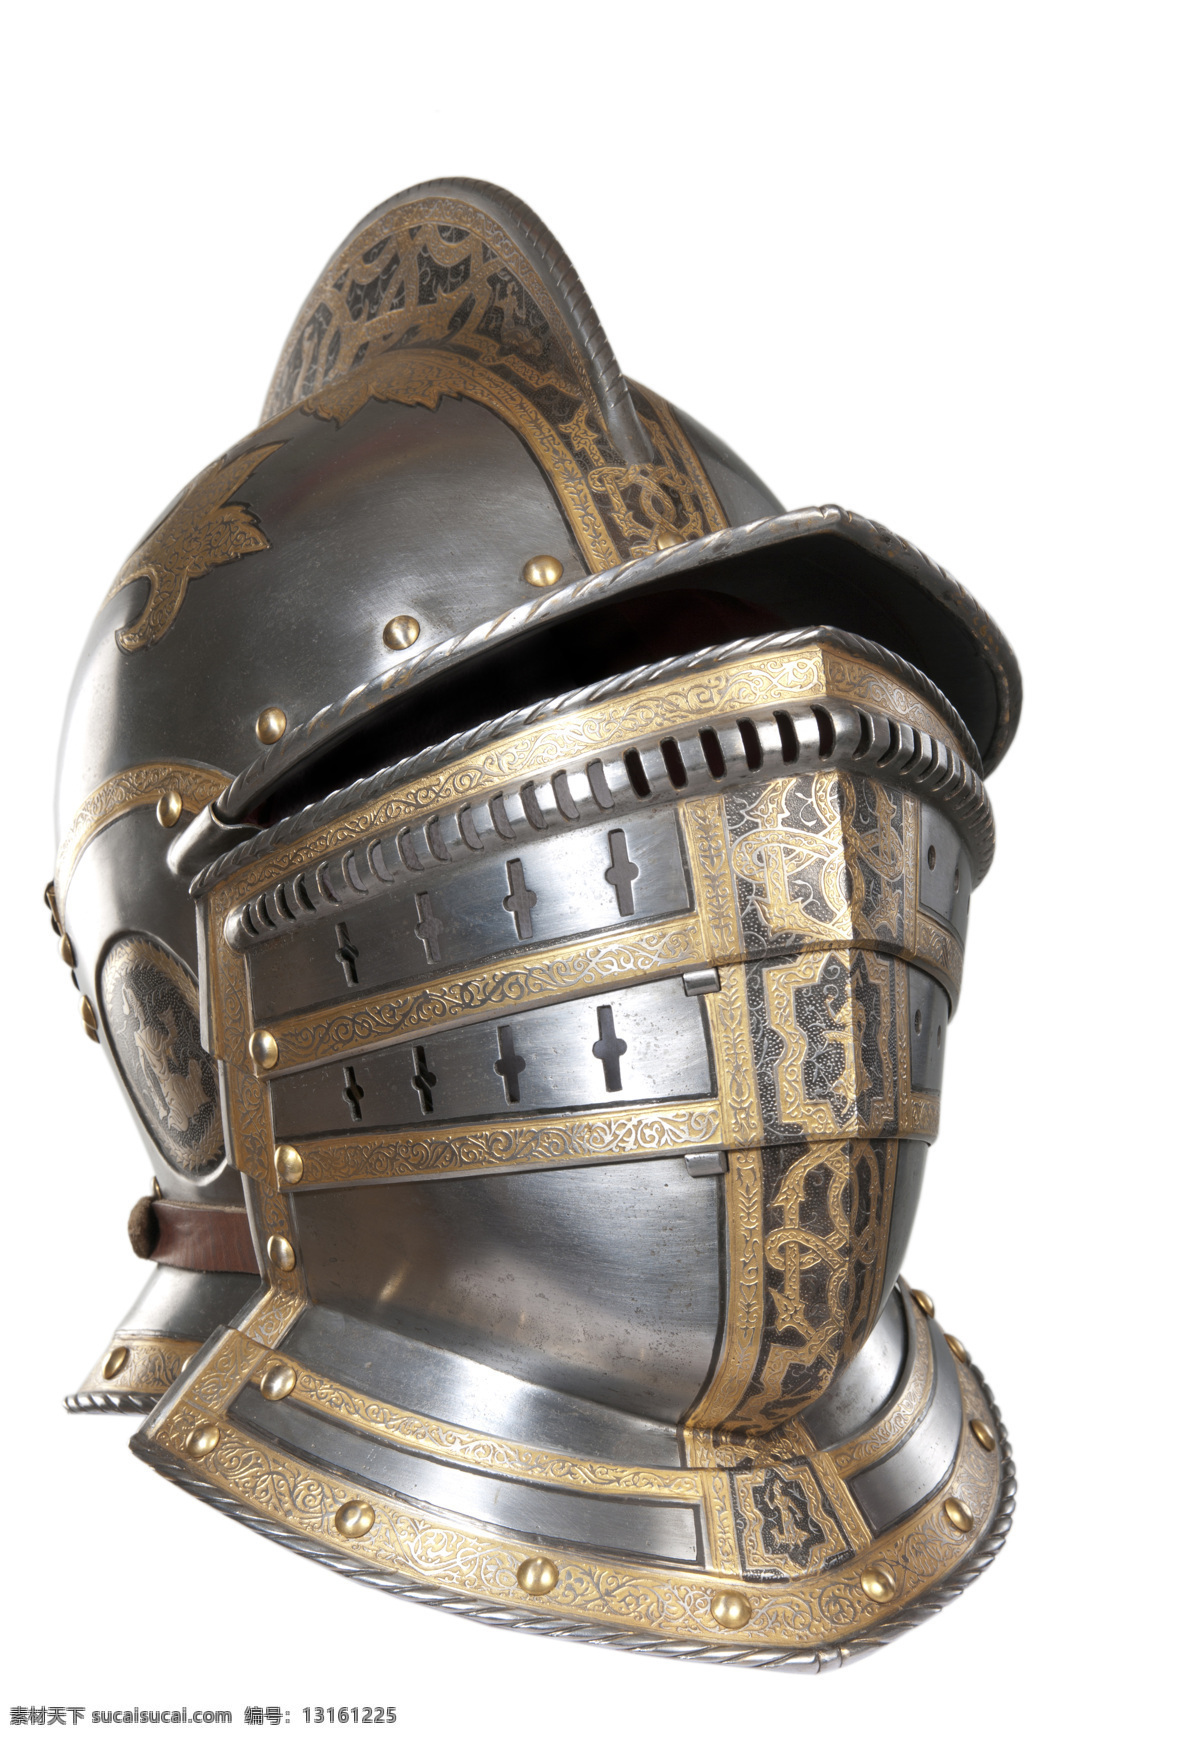 中世纪 骑士 头盔 高清 欧式 传统文化 文化艺术